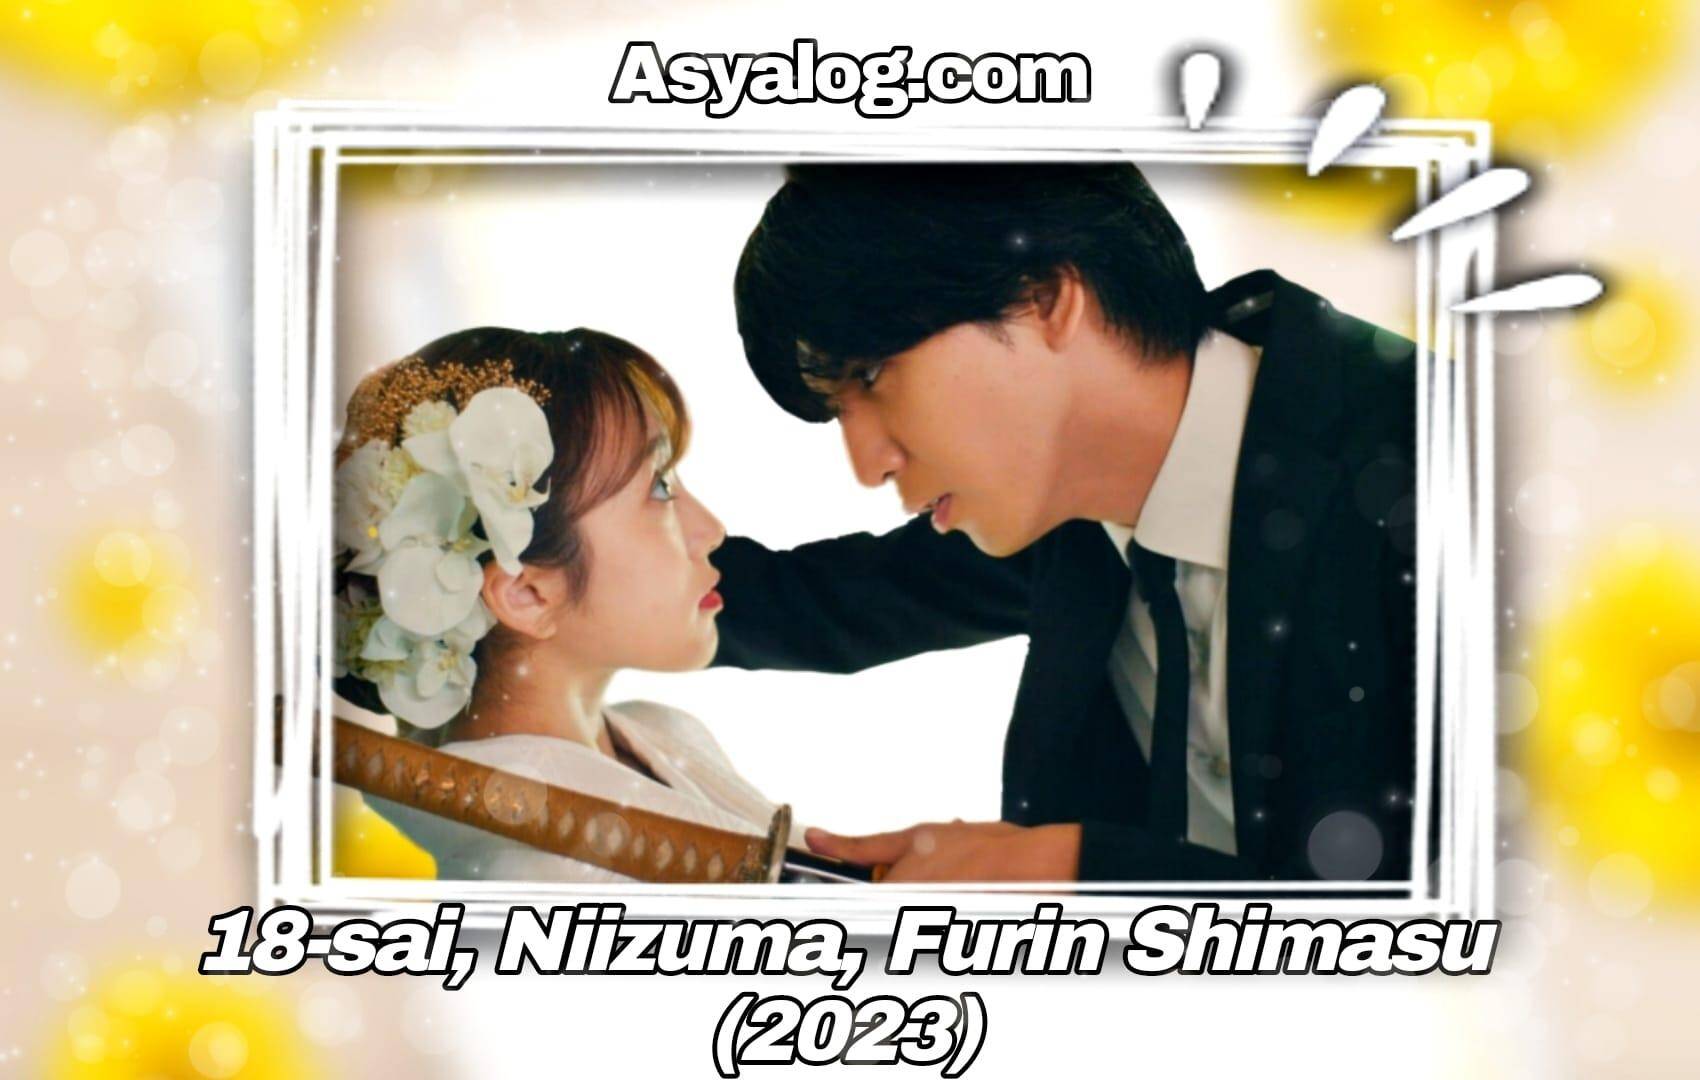 Juhachi-sai, Niizuma, Furin Shimasu (2023)